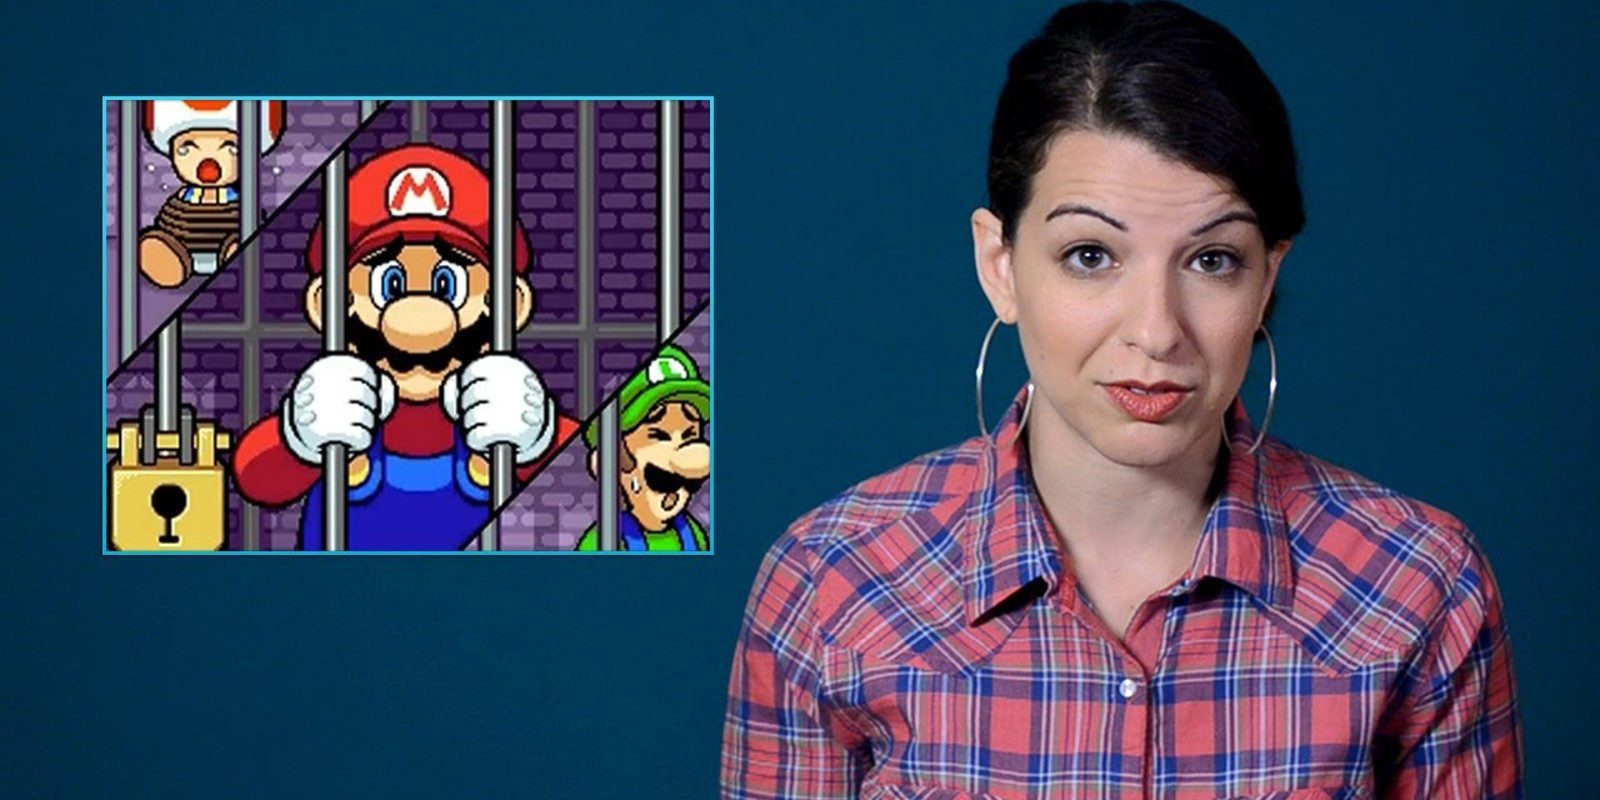 Repasamos algunos canales de YouTube dedicados al feminismo en los videojuegos